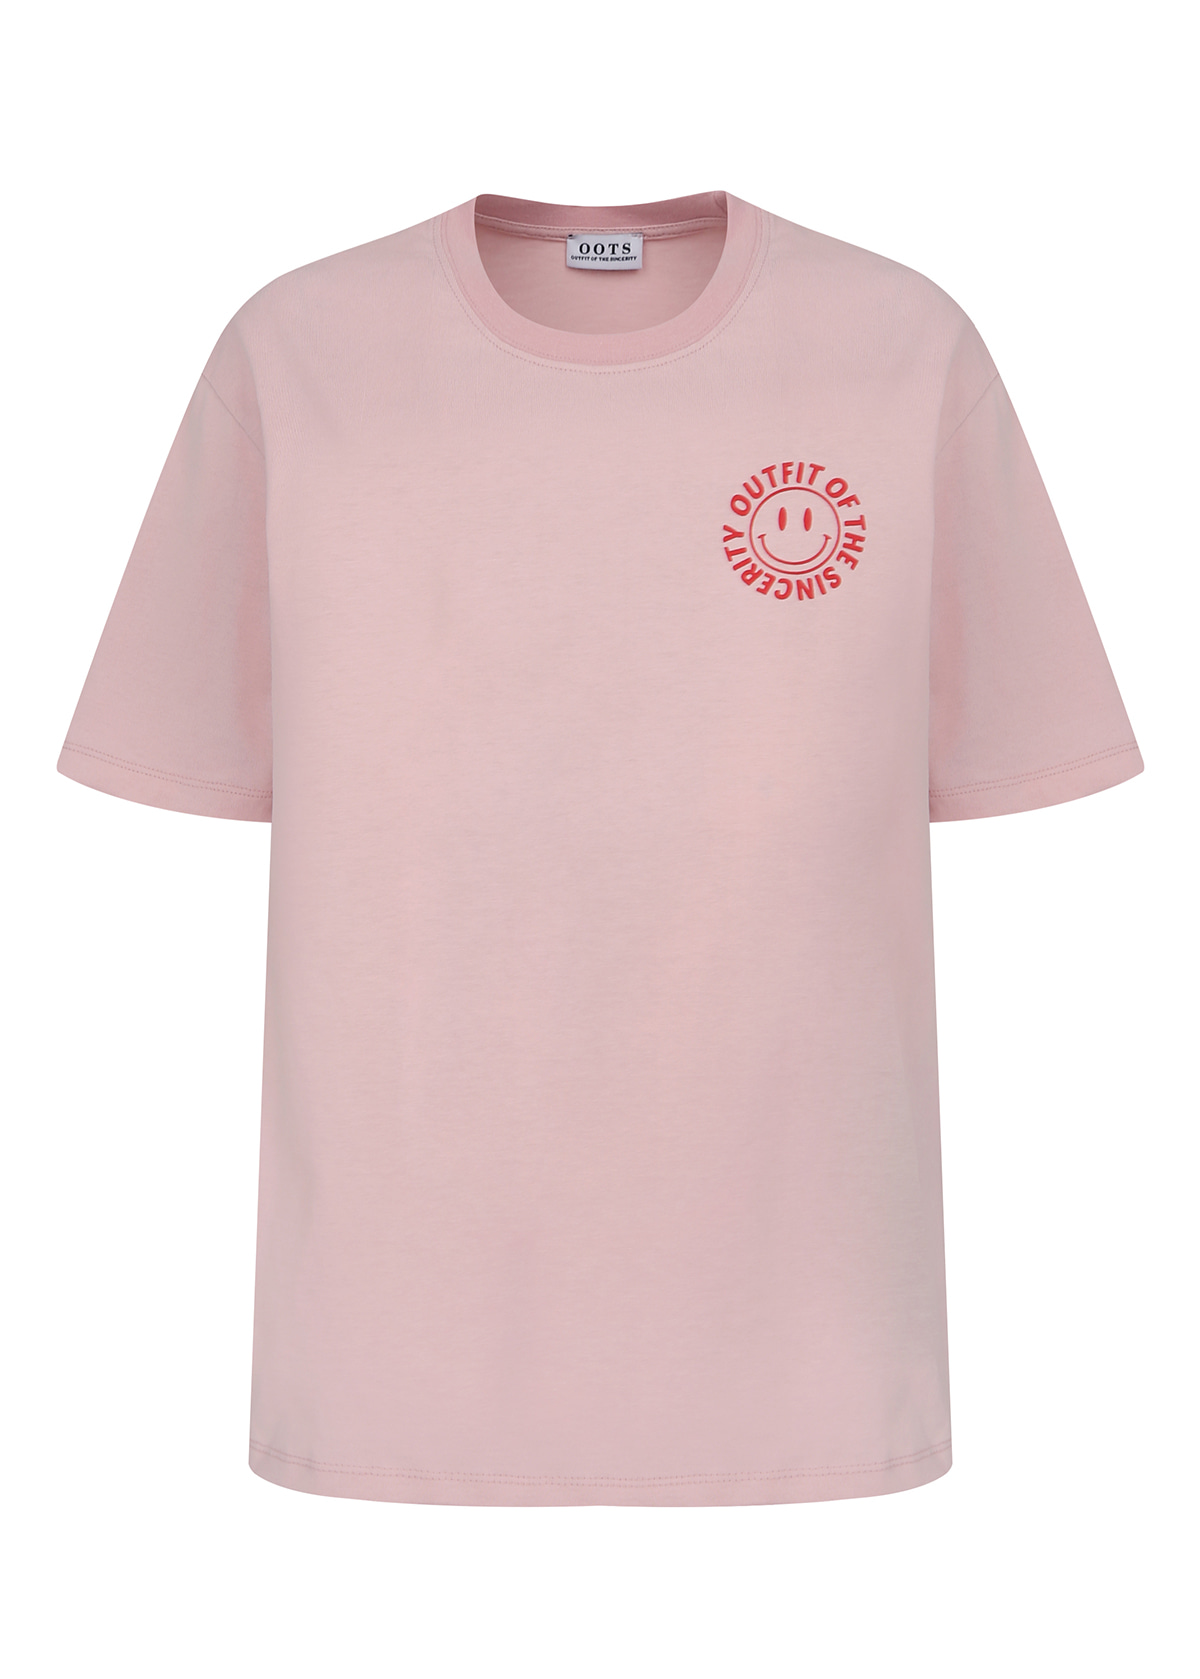 OOTS silket t-shirt pink